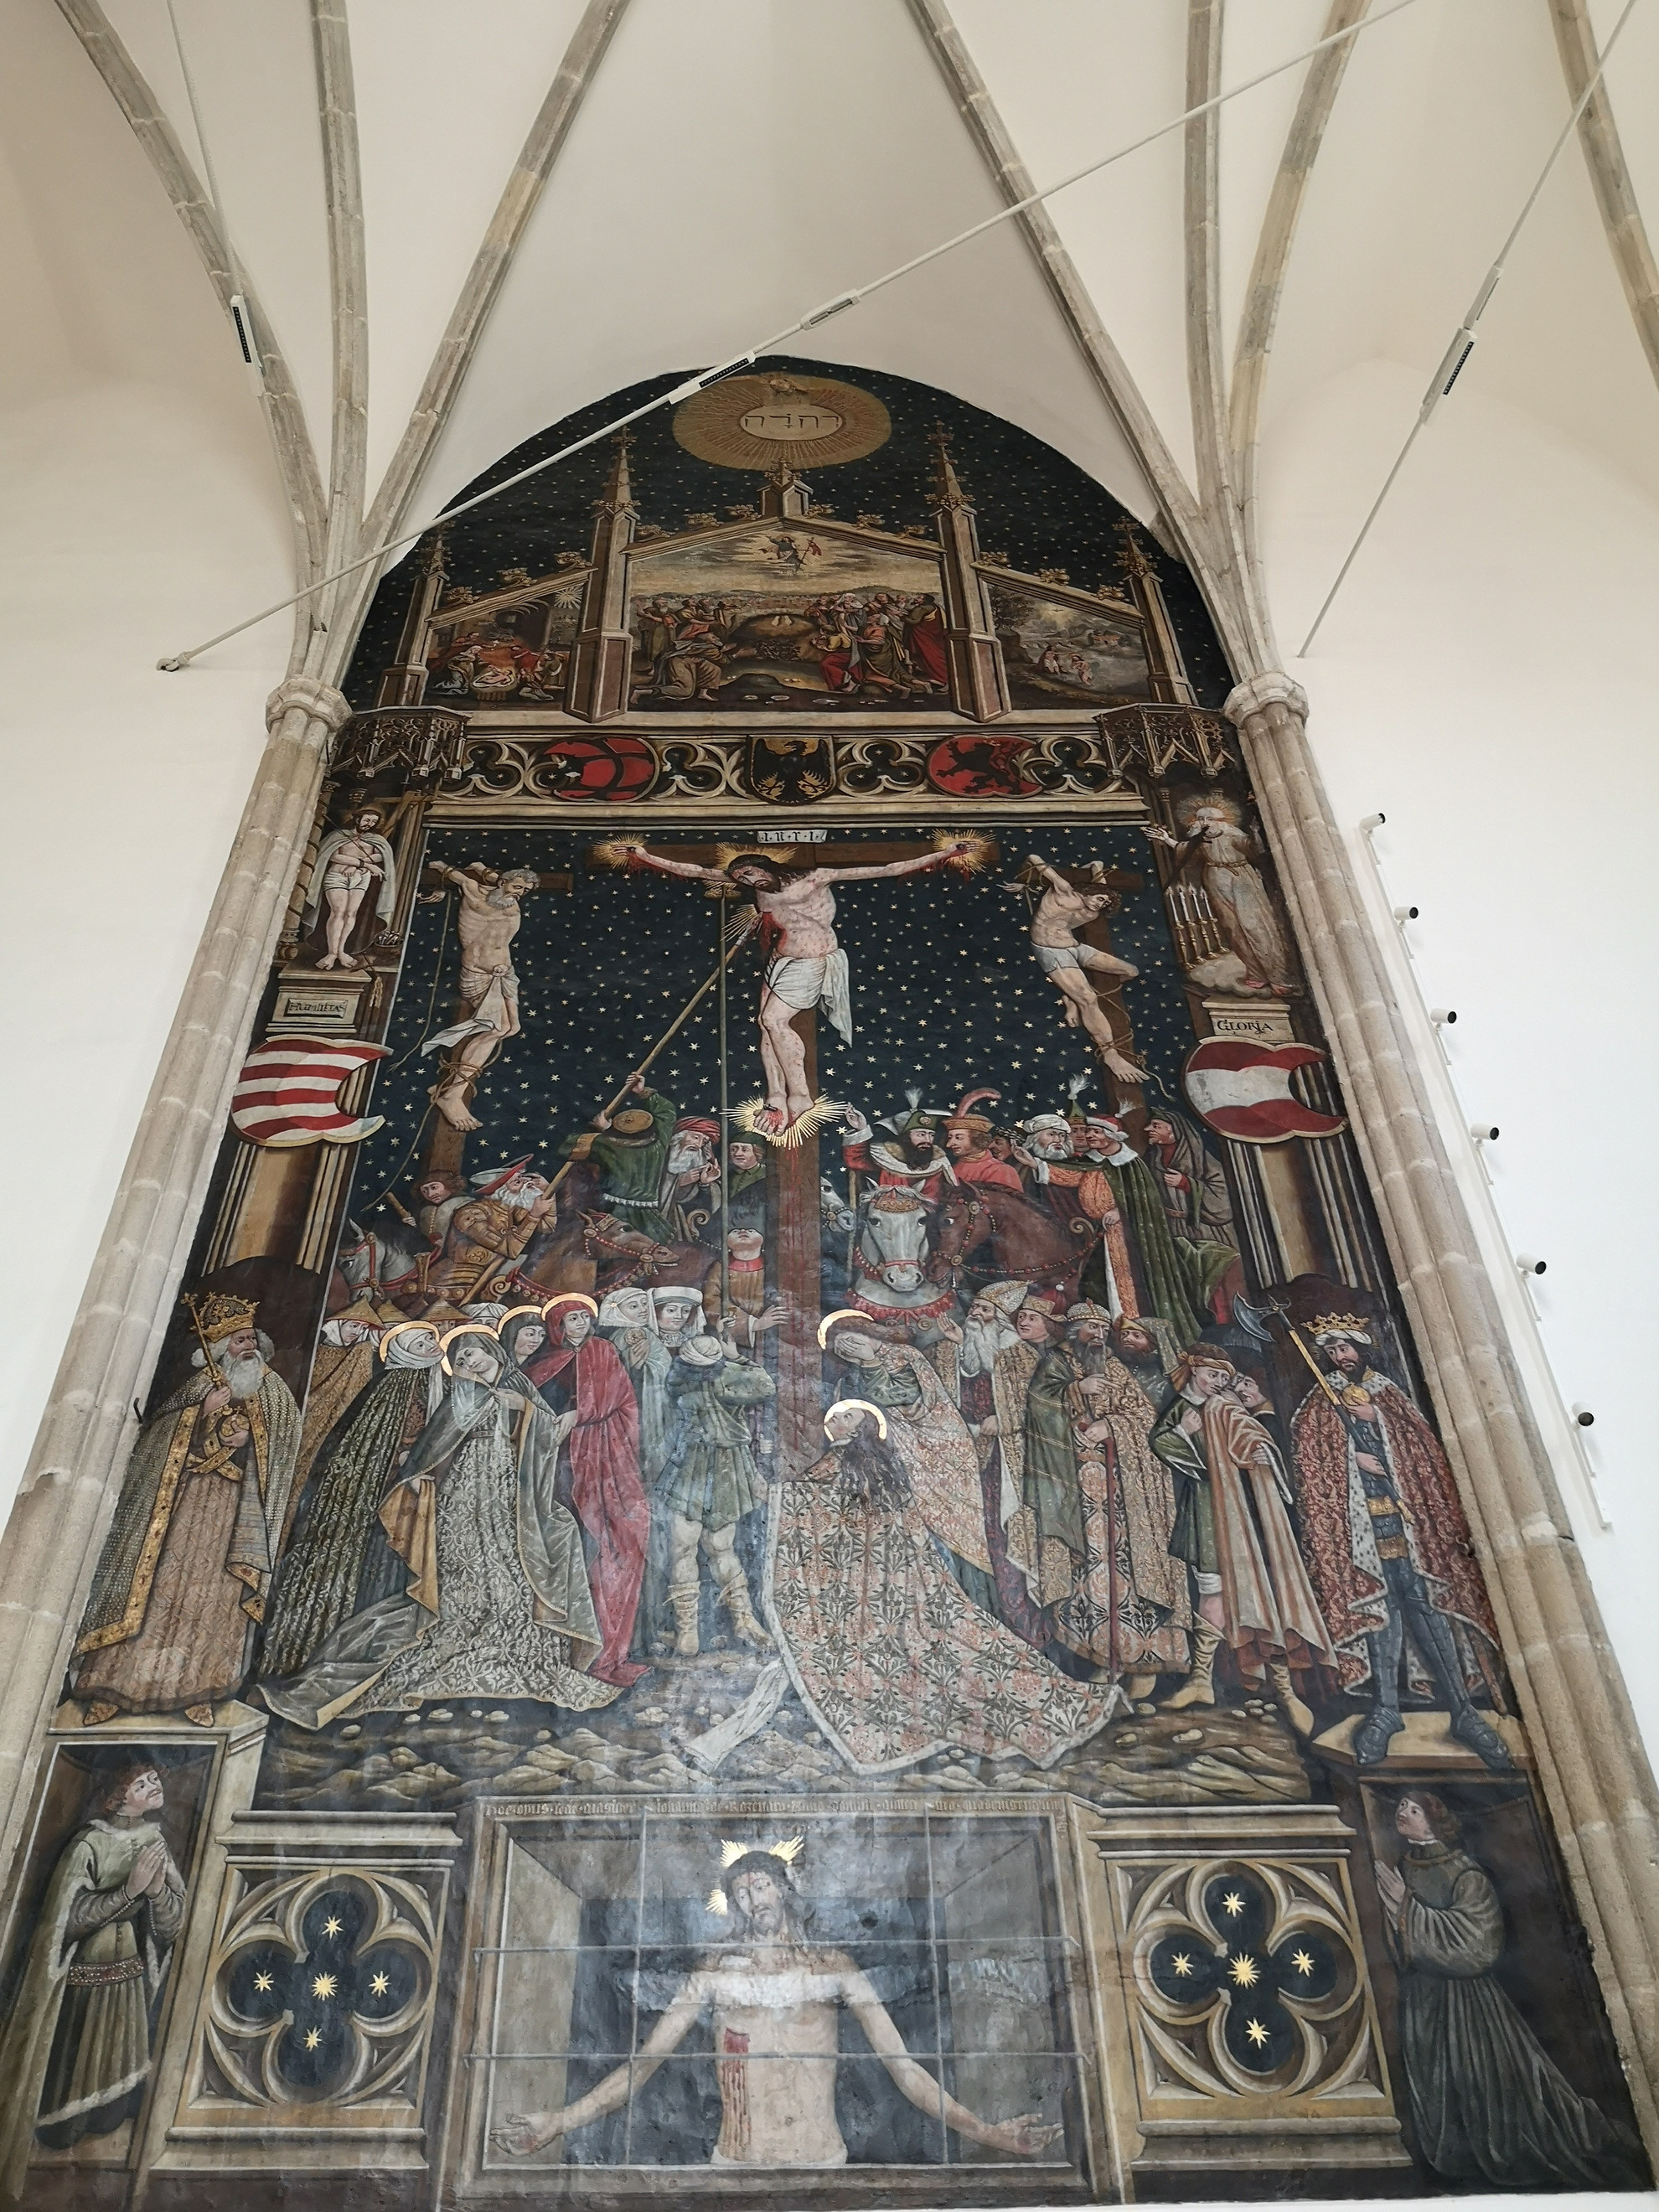 Rozsnyói János páratlan szépségű freskója